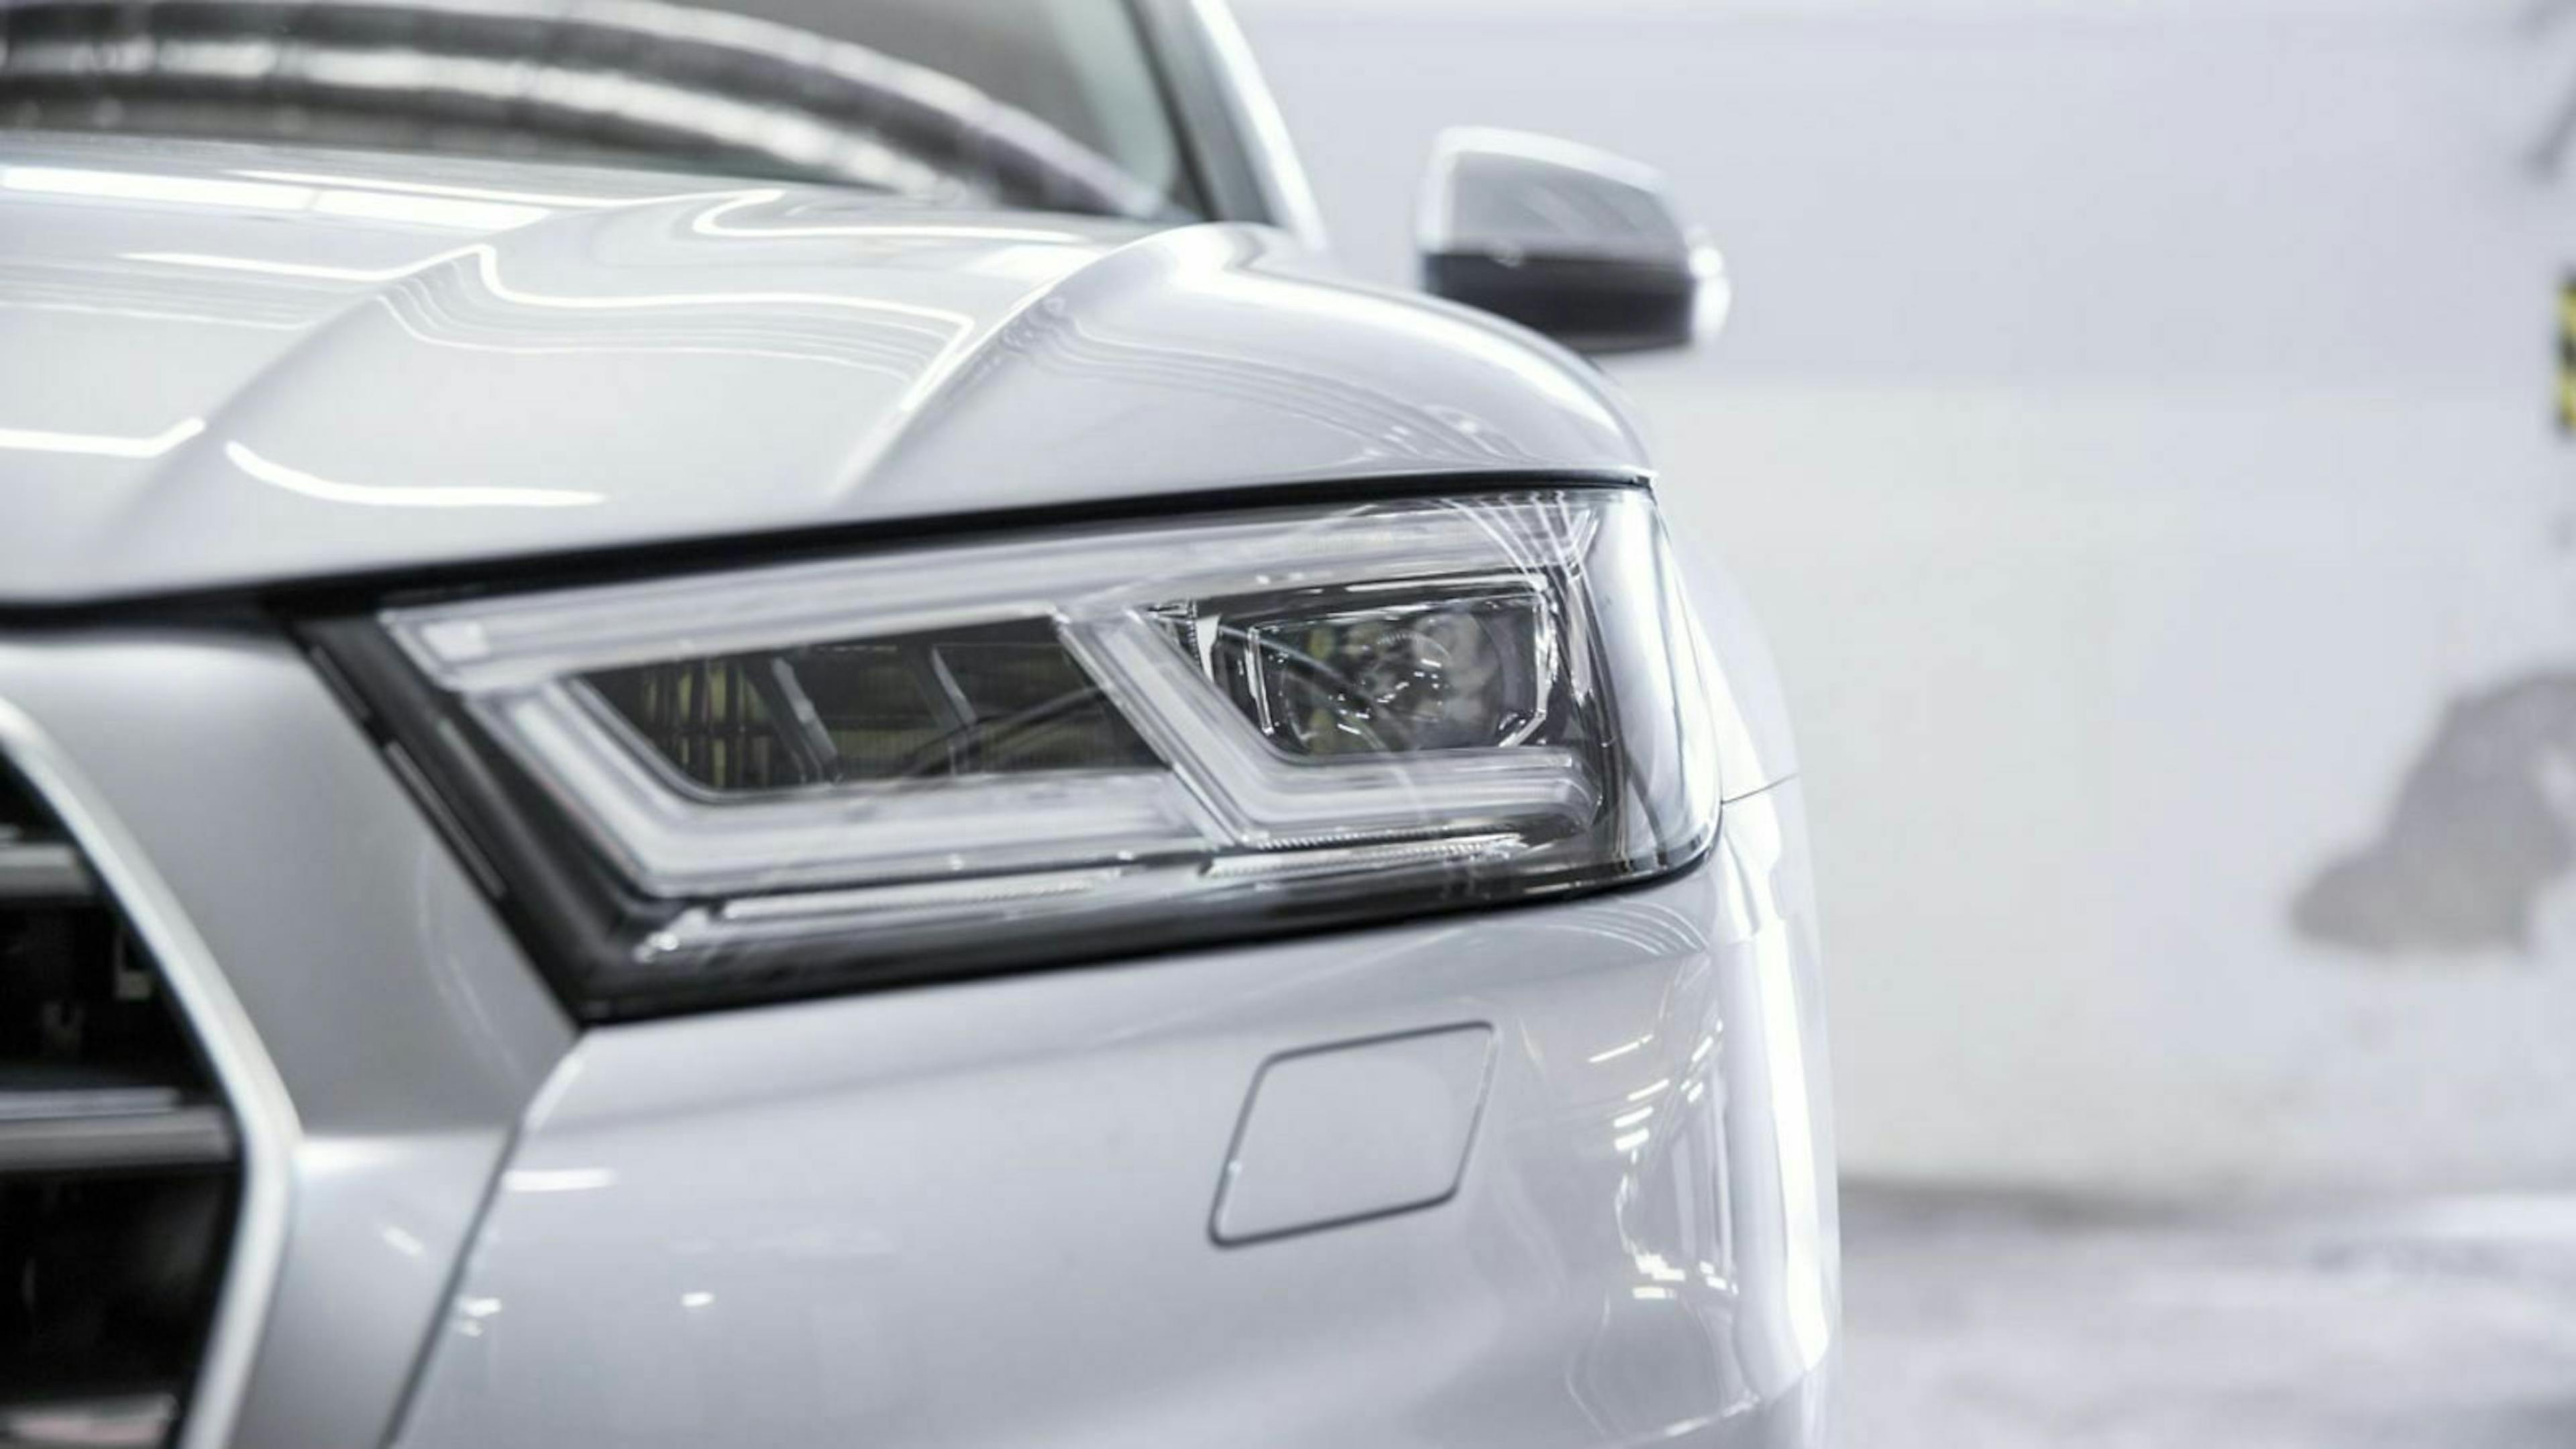 Der Audi Q5 im Test leuchtete mit LED-Matrix-Scheinwerfern. Das Extra würden wir empfehlen